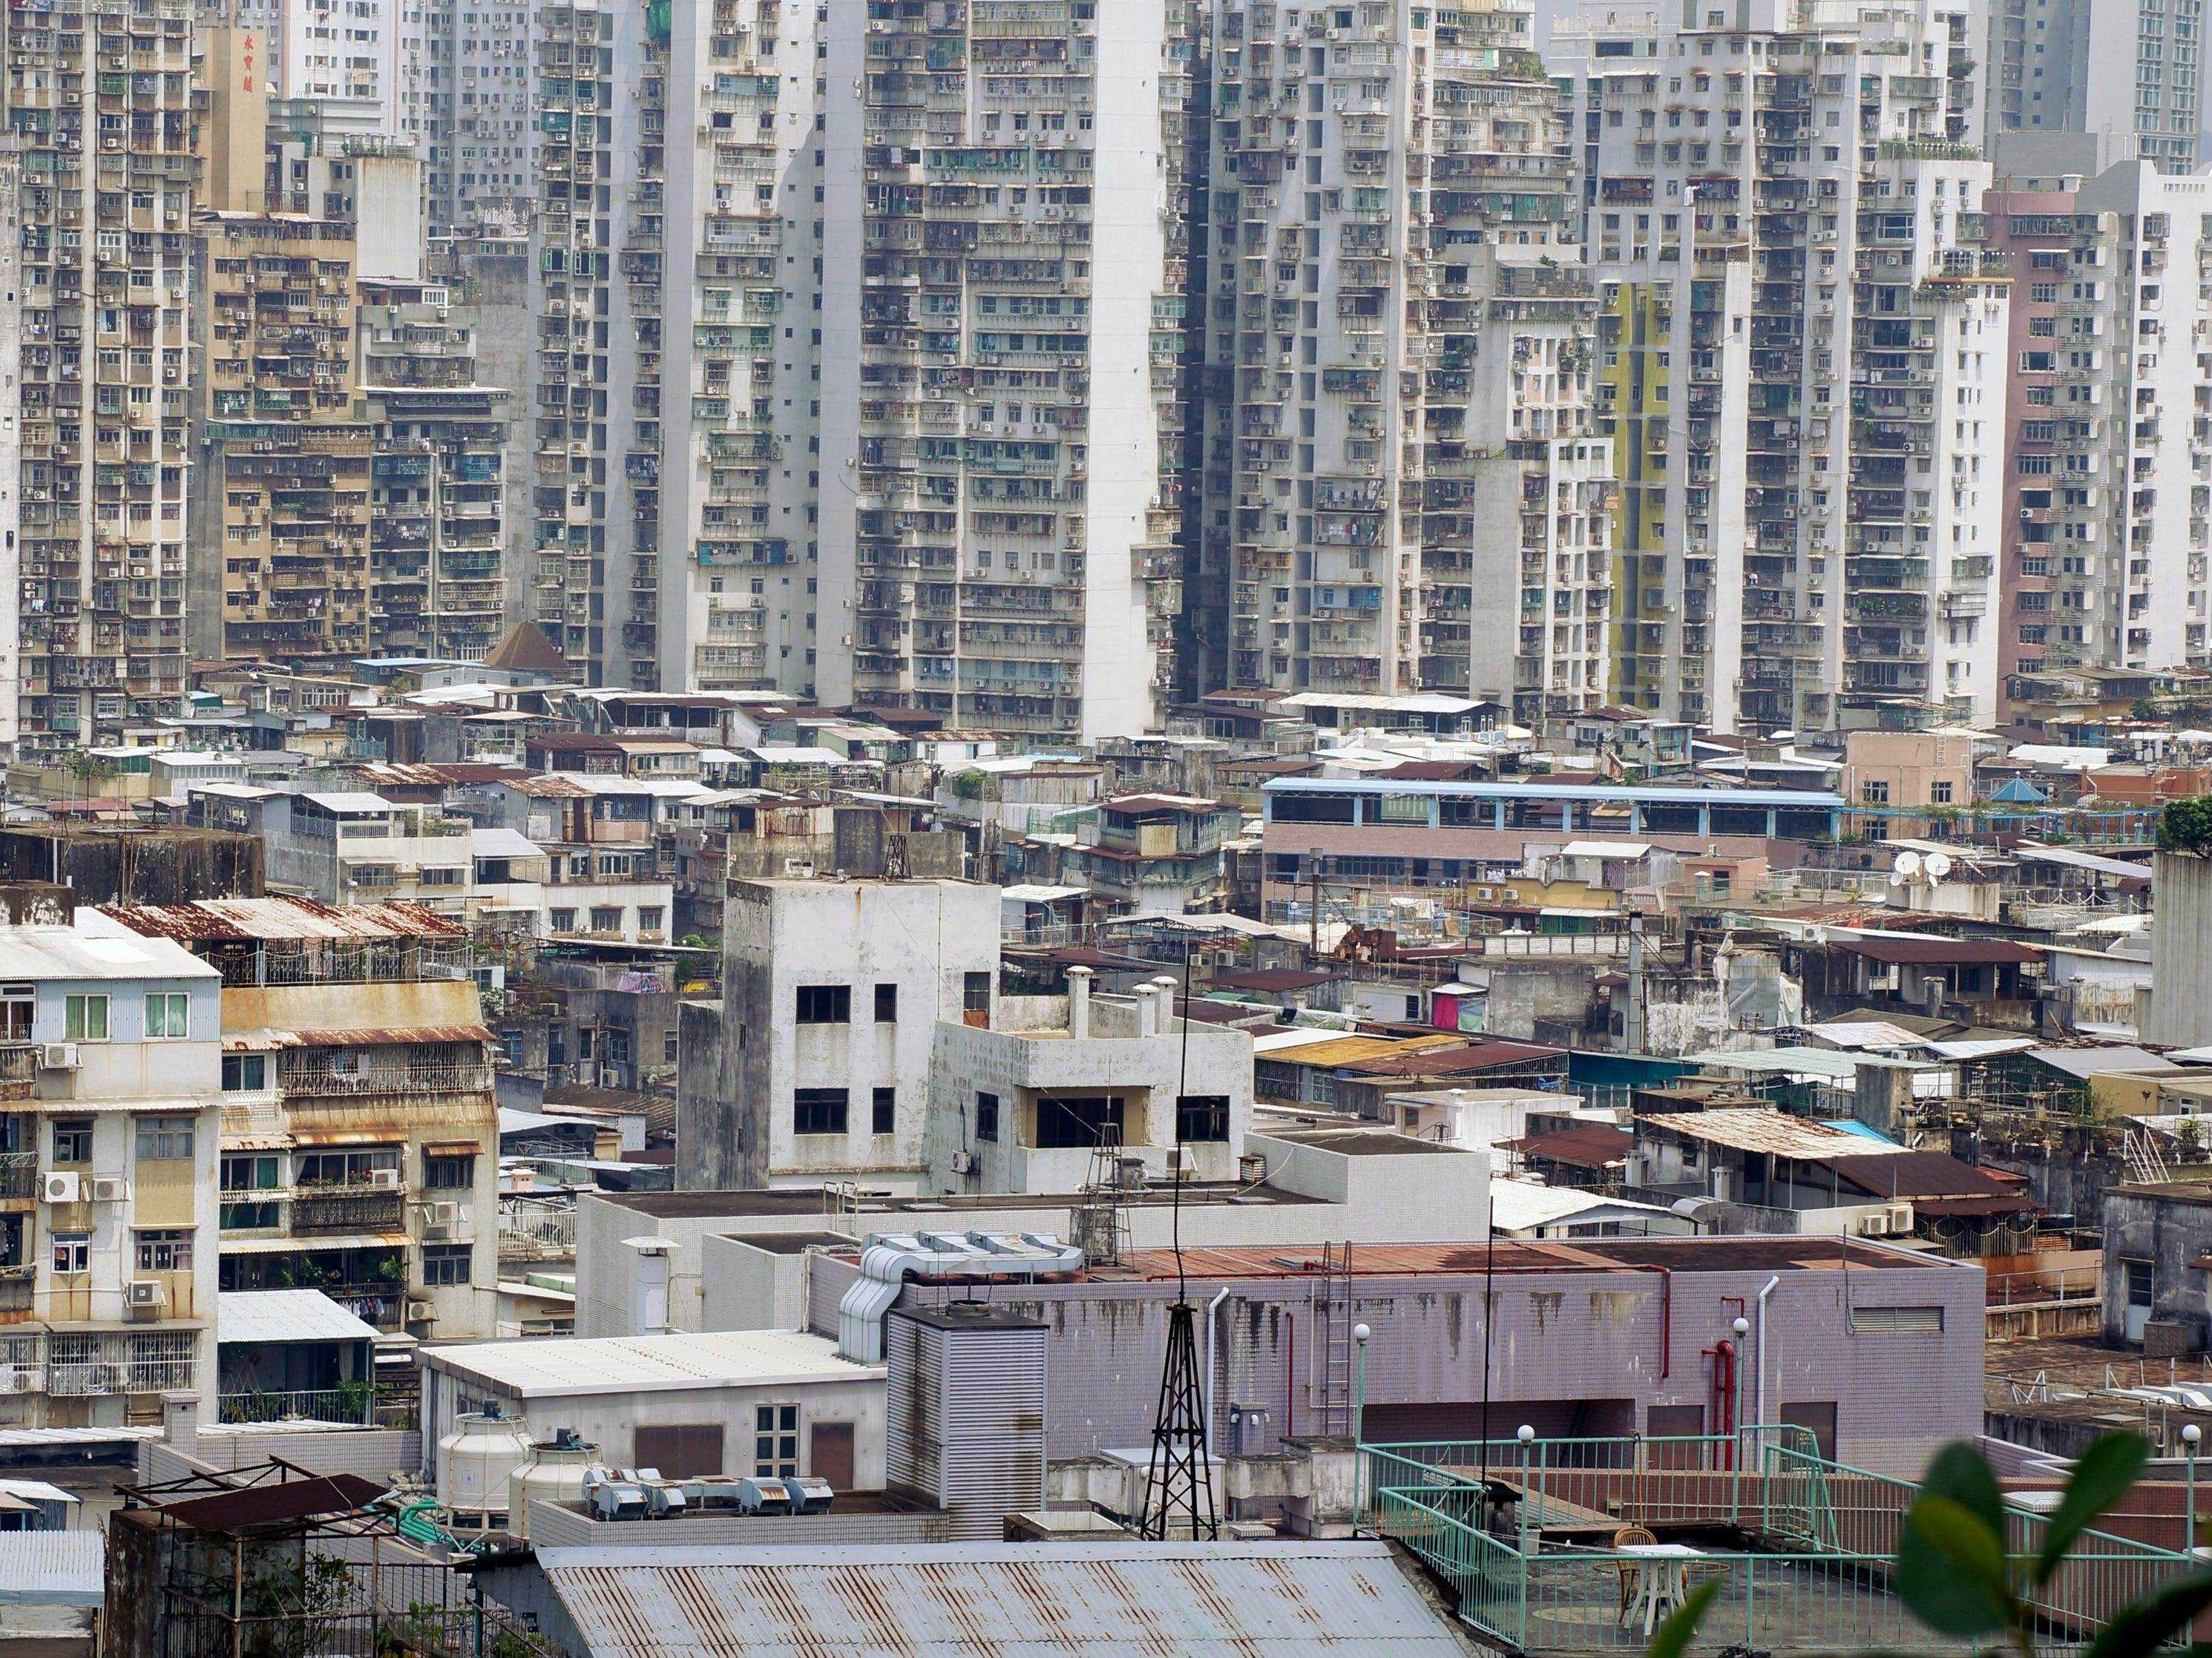 Das Stadtbild von Macau zeigt heruntergekommene Gebäude in verschiedenen Zuständen der Unordnung